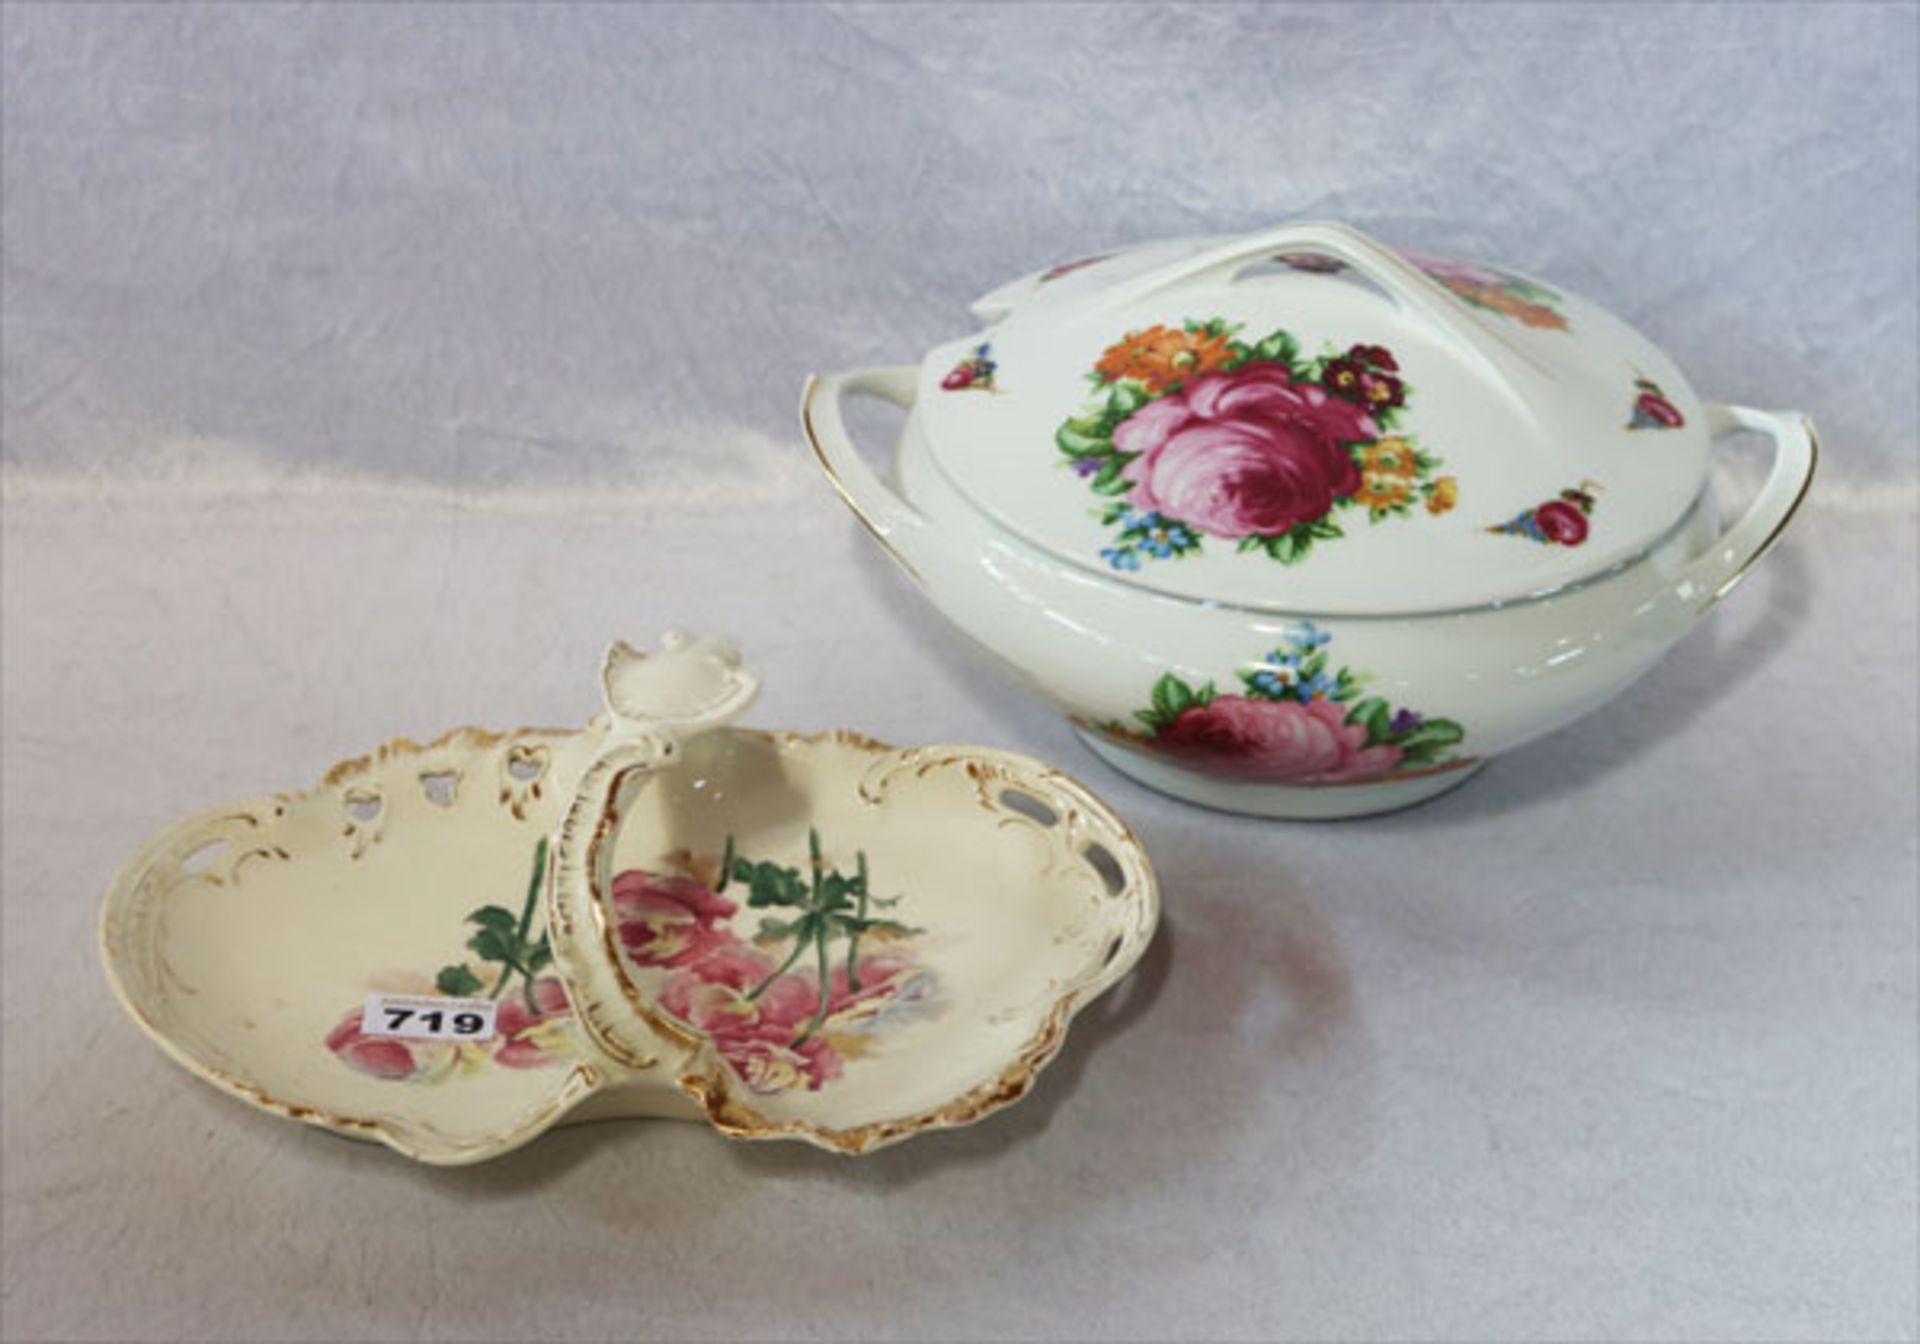 Große Porzellan Deckelterrine mit Blumendekor, H 18 cm, D 24 cm, und Keramik Henkelschale mit Rosen-